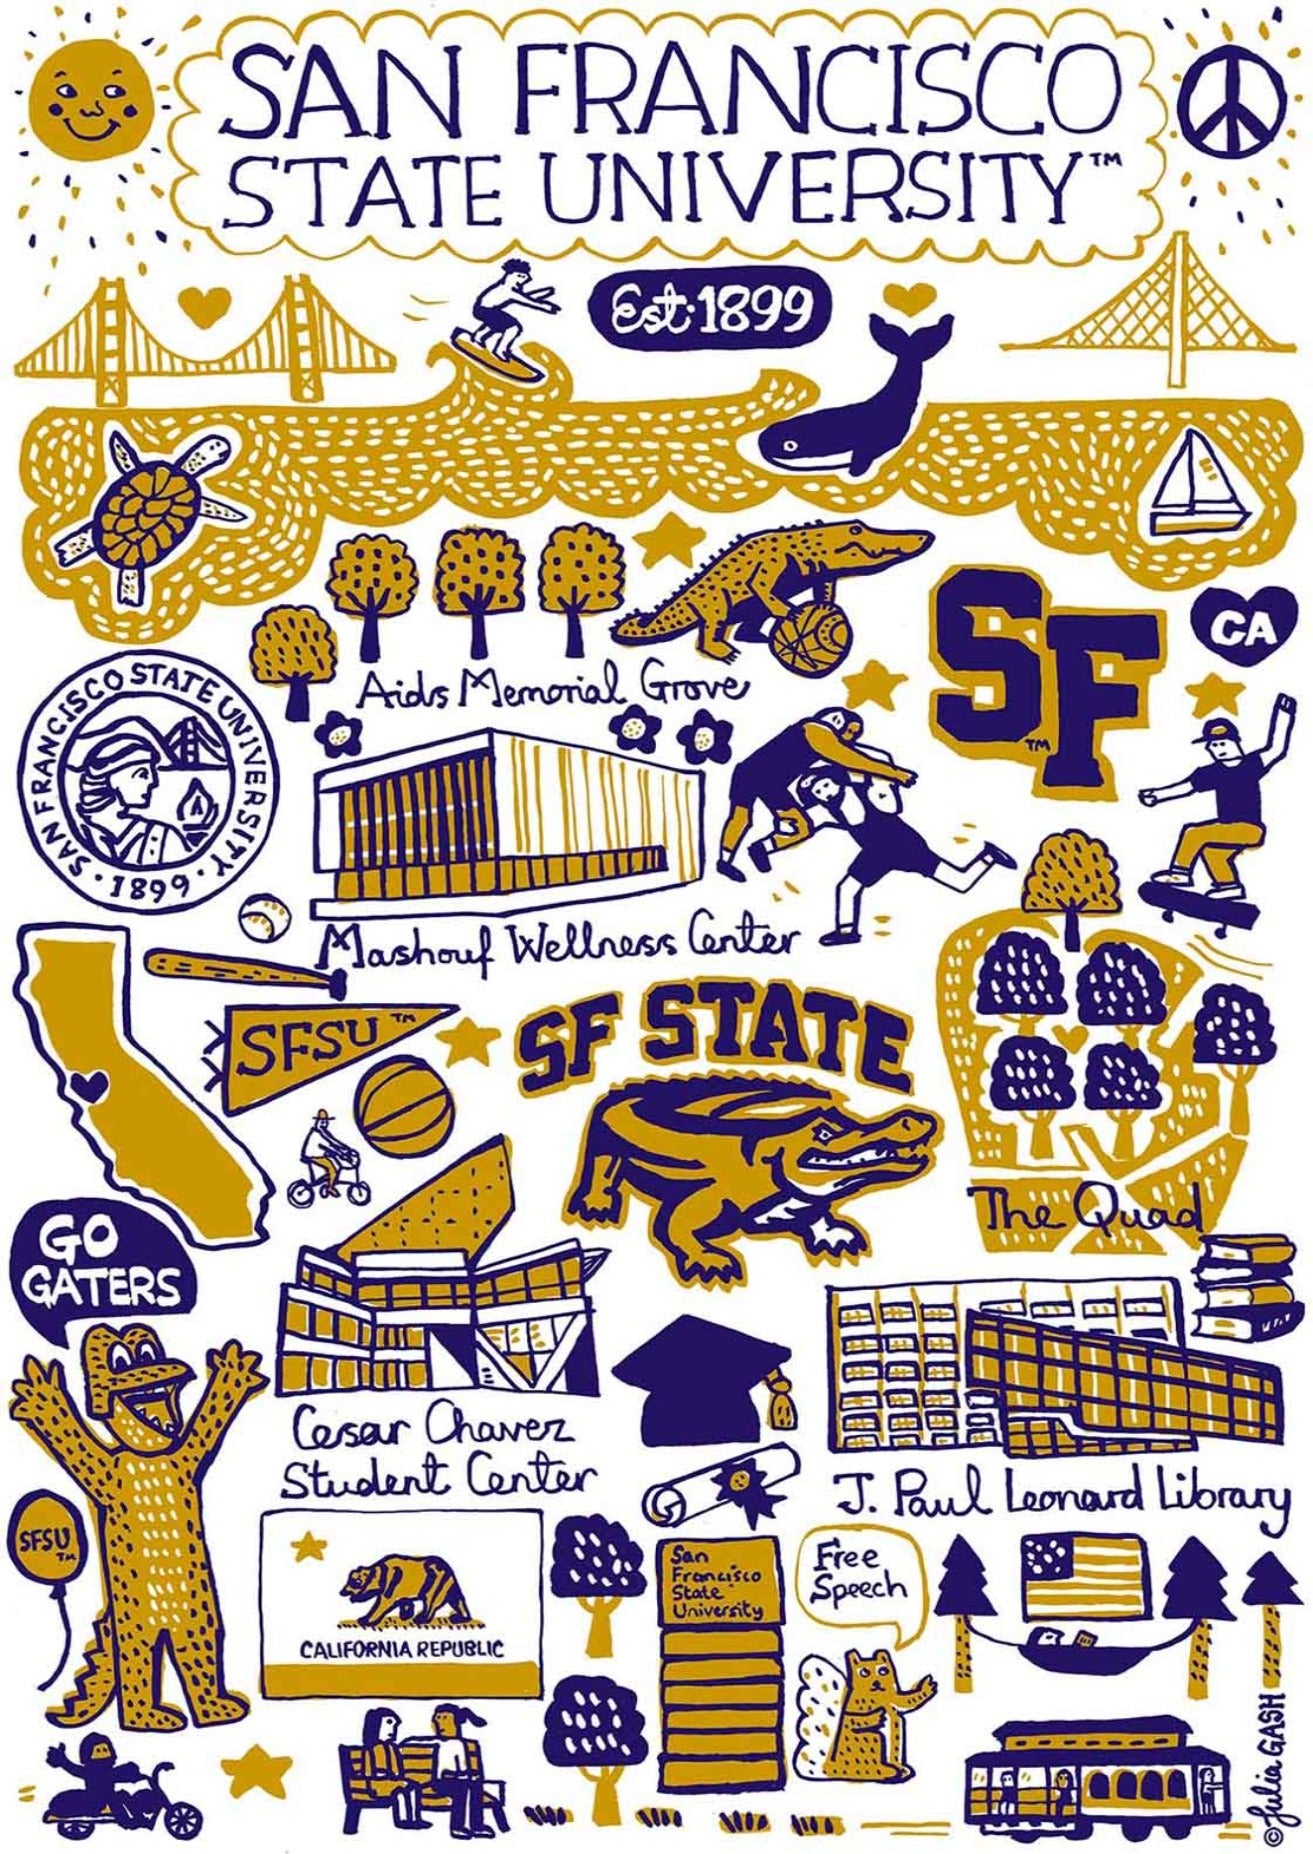 San Francisco State University by Julia Gash